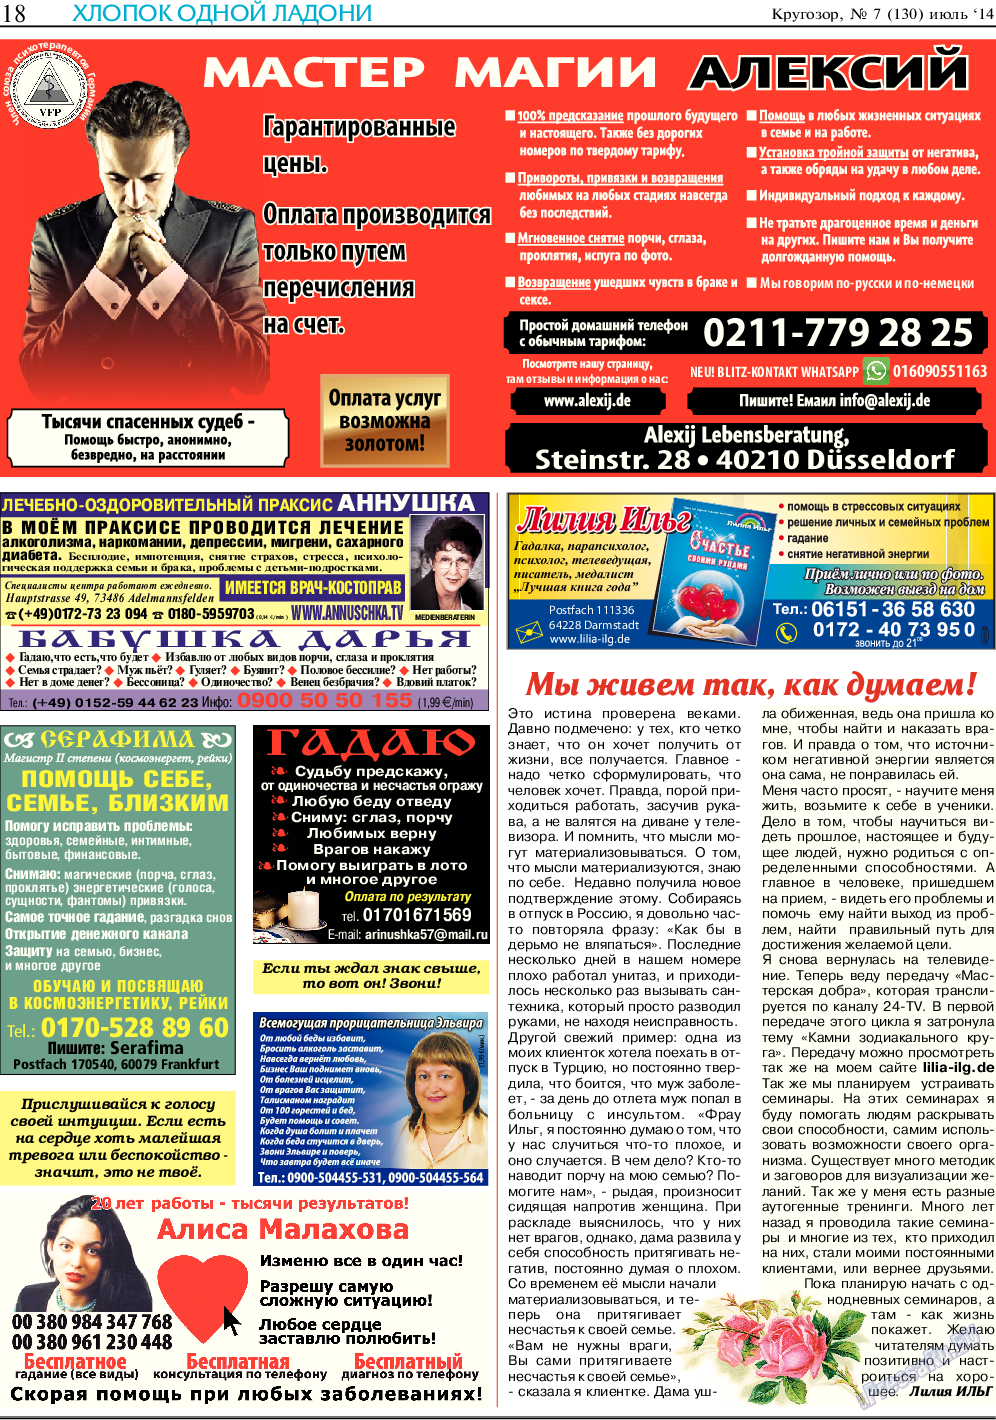 Кругозор, газета. 2014 №7 стр.18